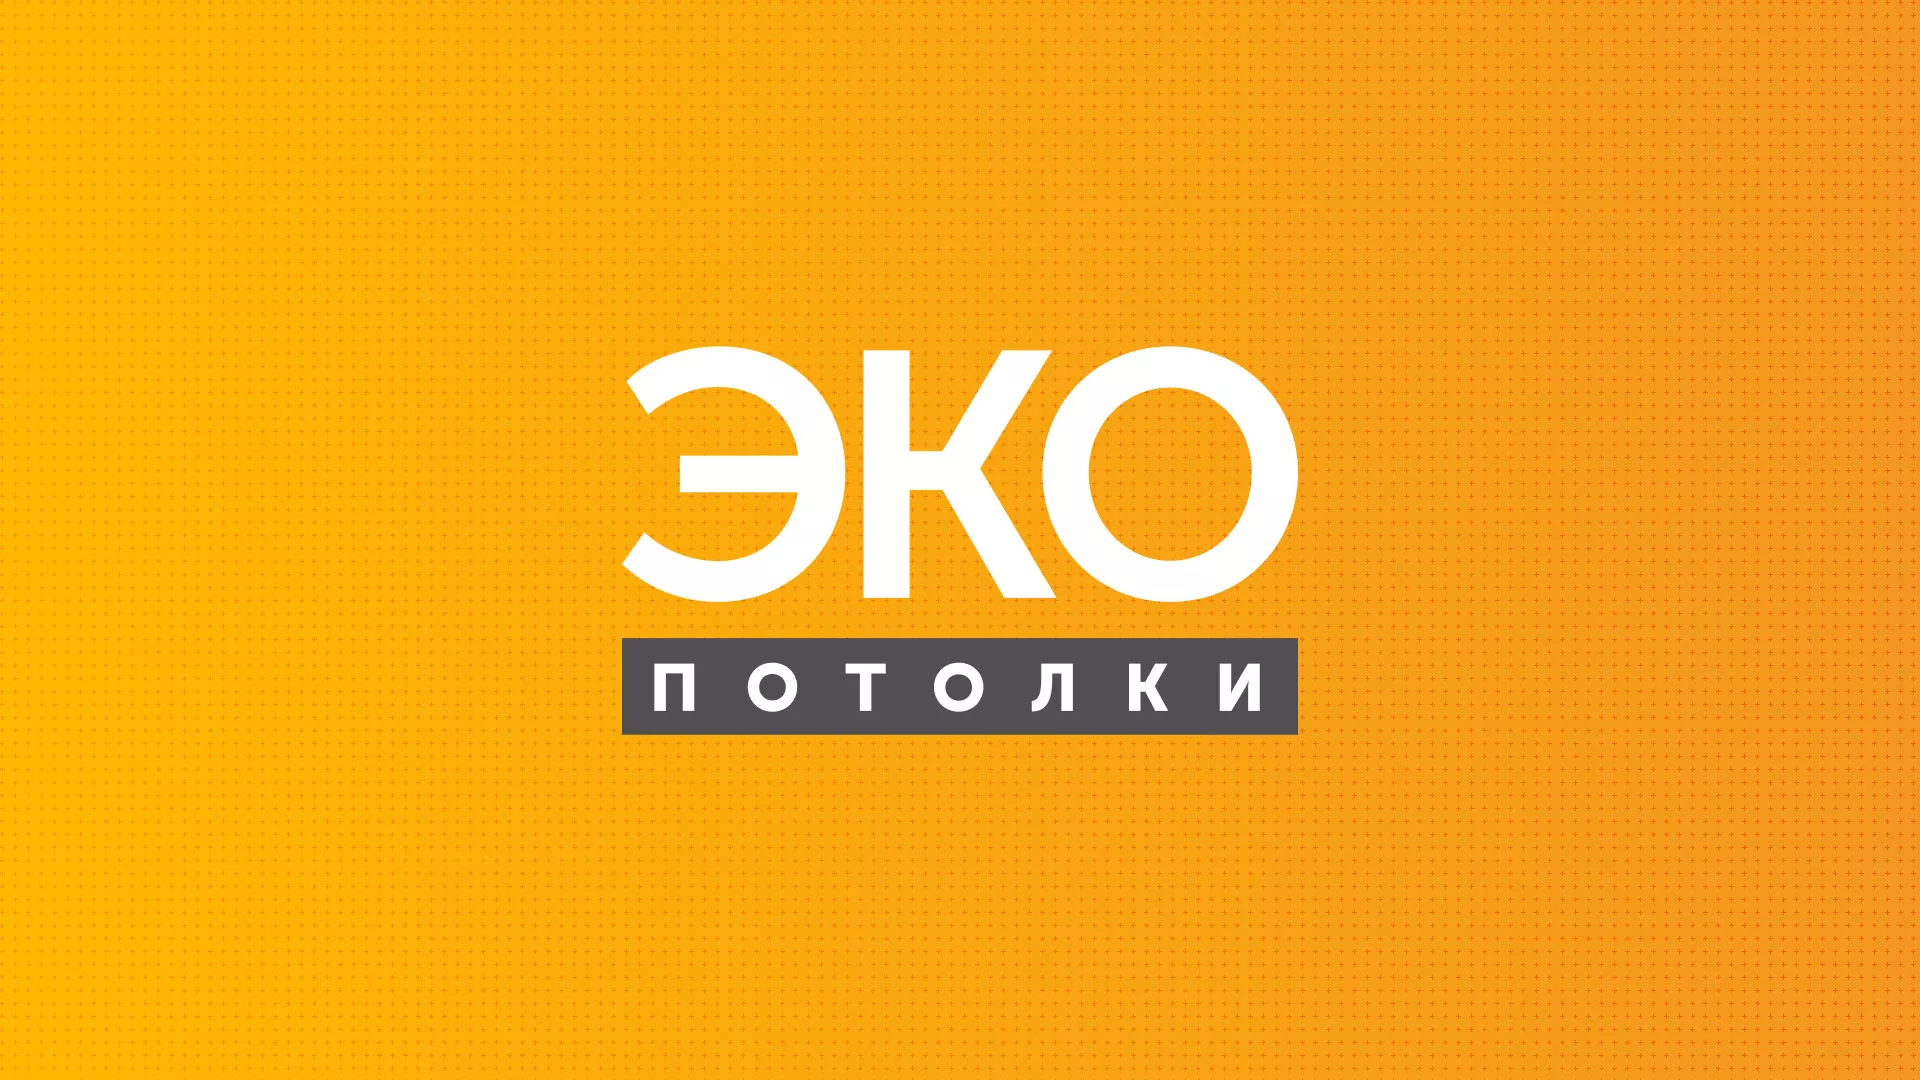 Разработка сайта по натяжным потолкам «Эко Потолки» в Мурманске